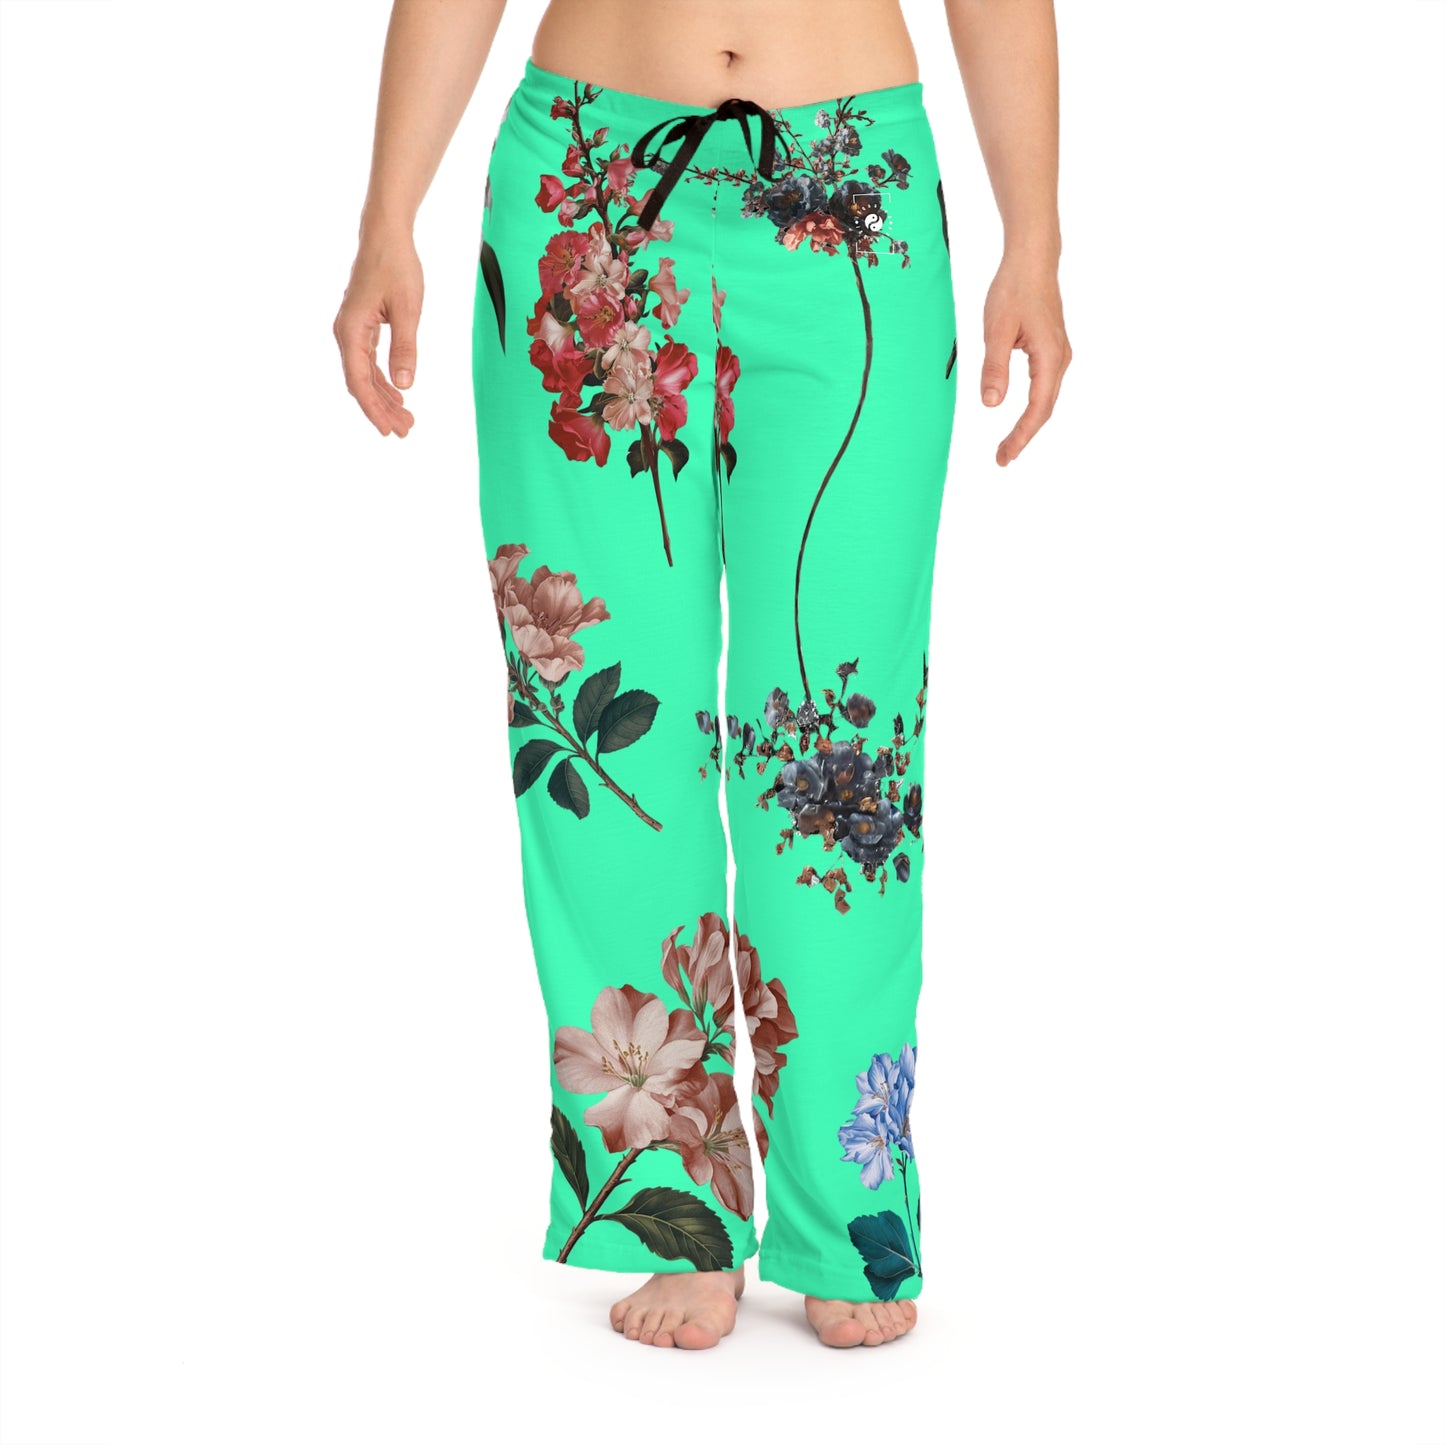 Botanicals on Turquoise - Women lounge pants